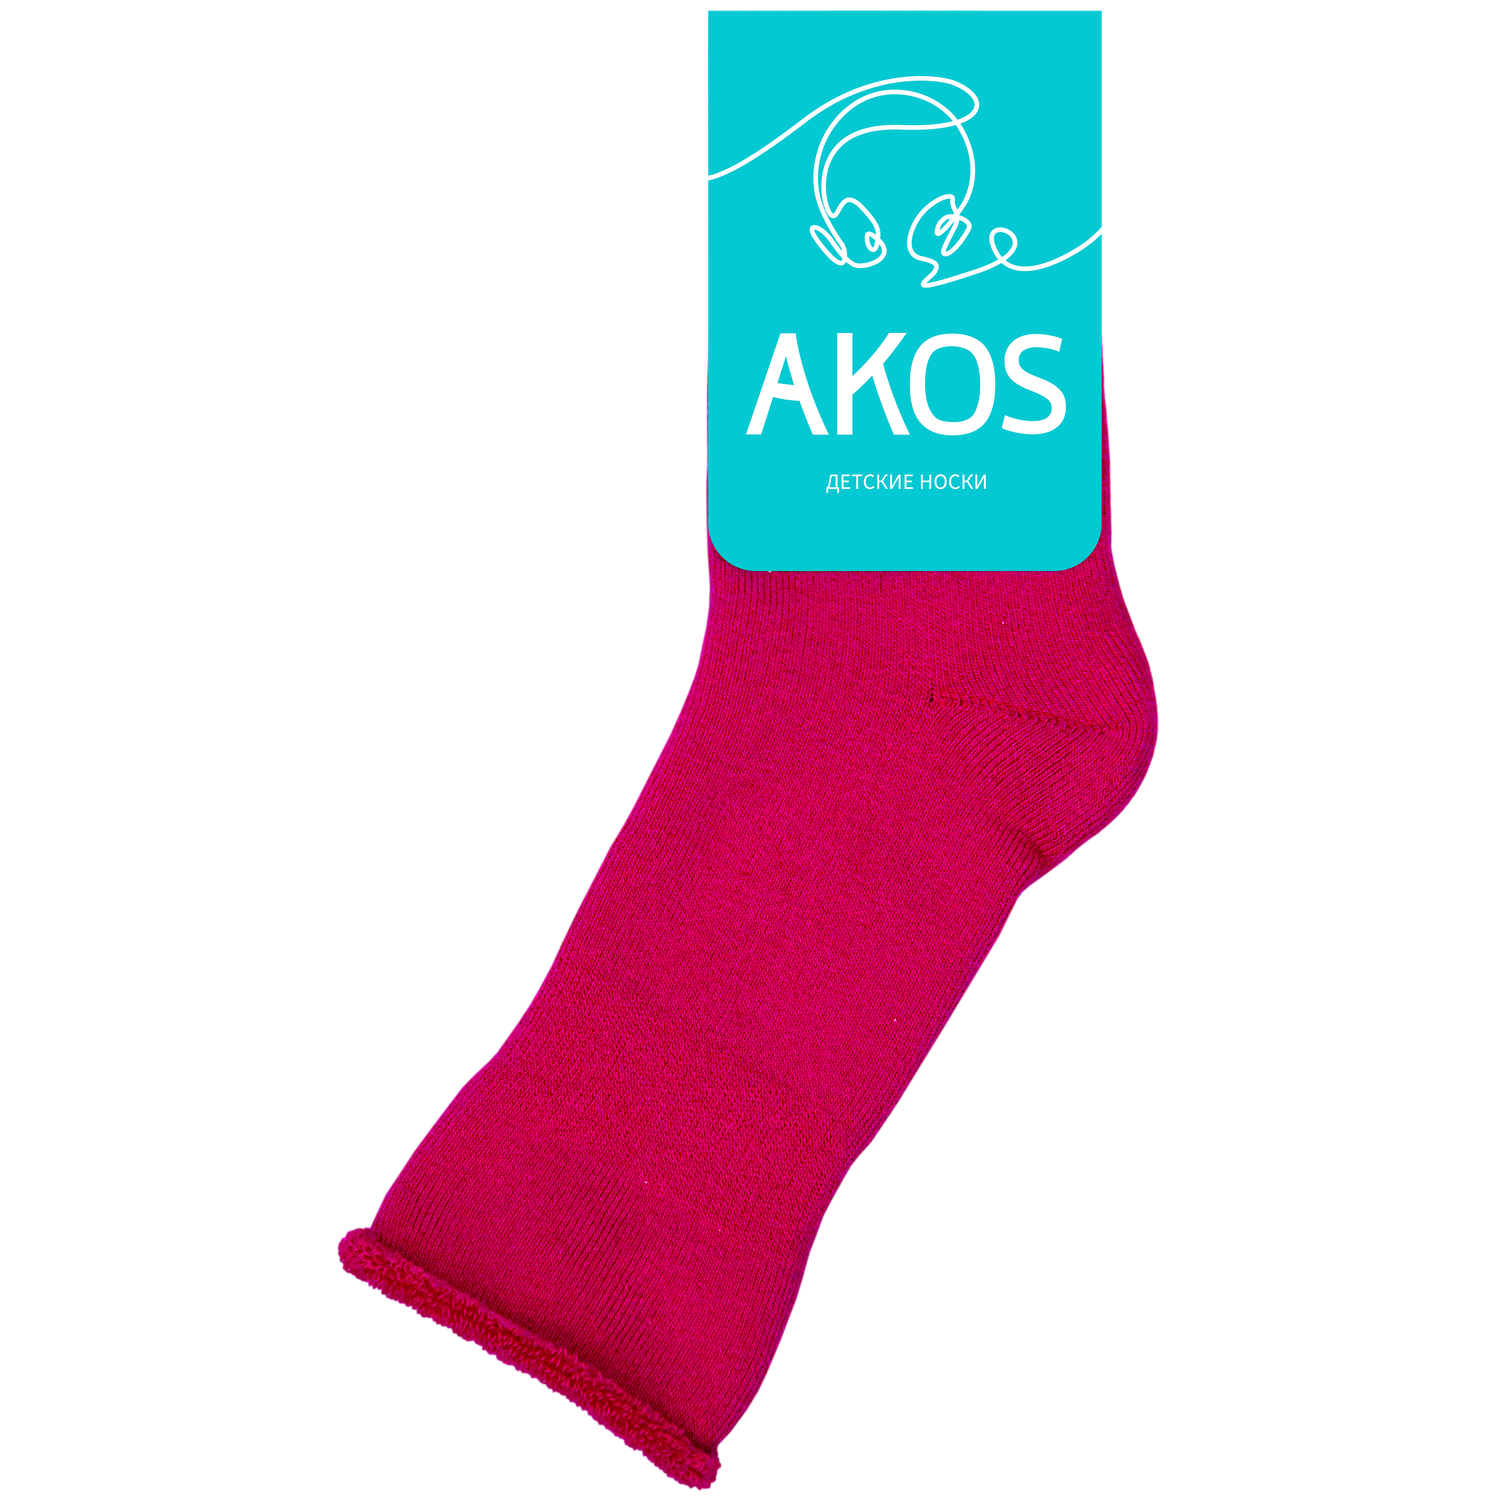 Носки детские махровые Akos - фото 1